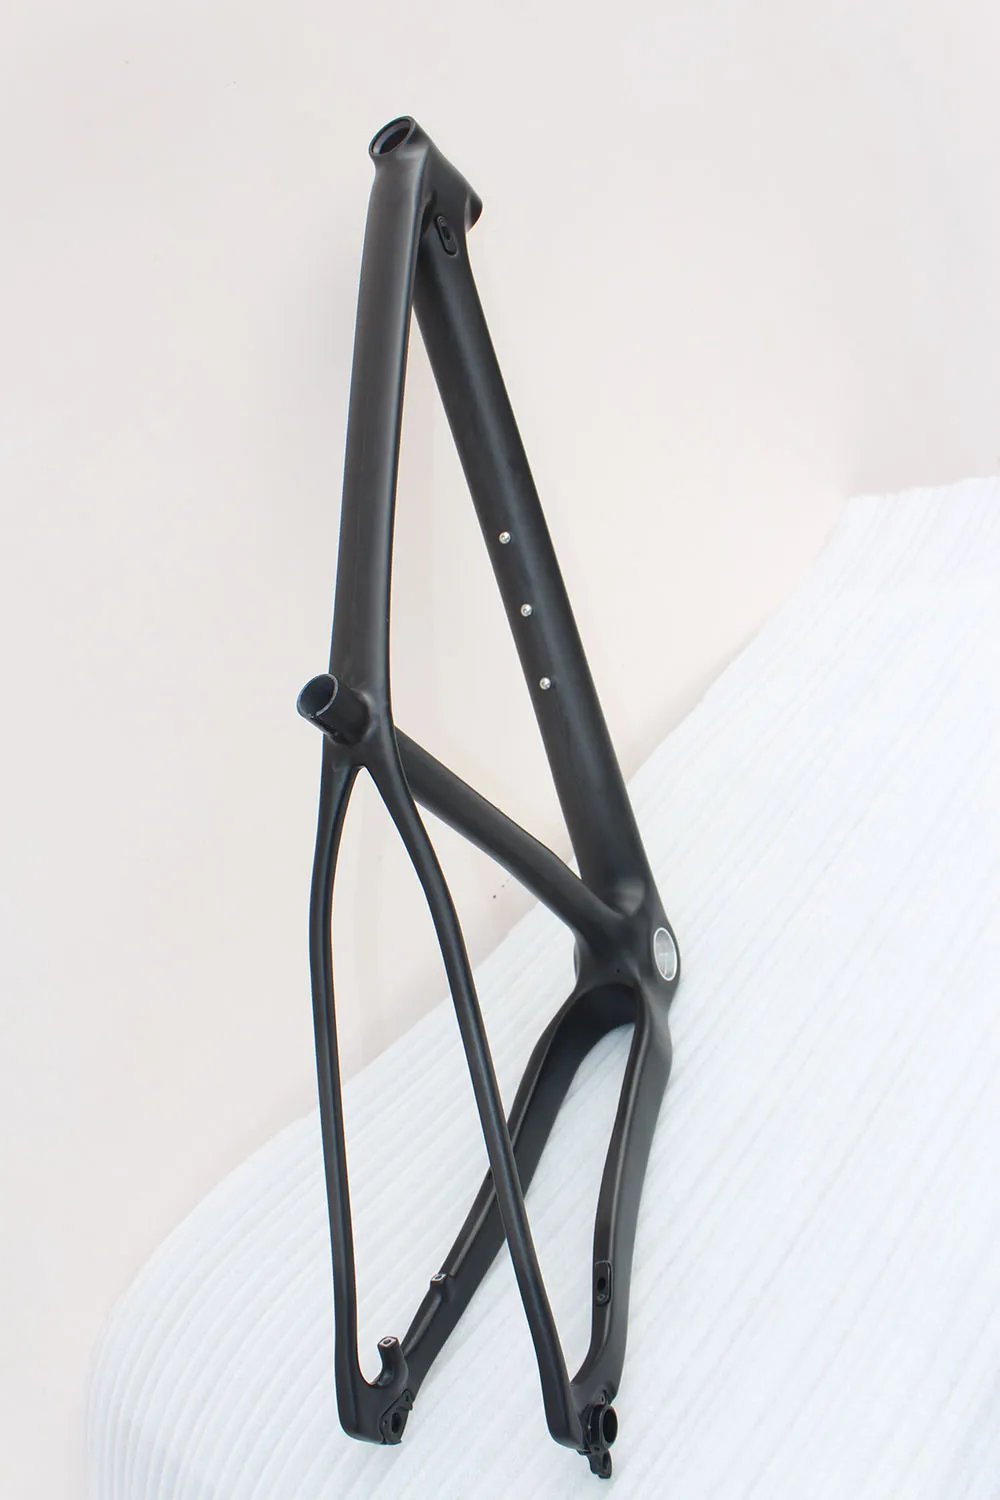 29ER китайский углеродный mtb рама 15/17/19 дюймов полностью из углеродного волокна, набор рамок для горных велосипедов mtb велосипедных рам